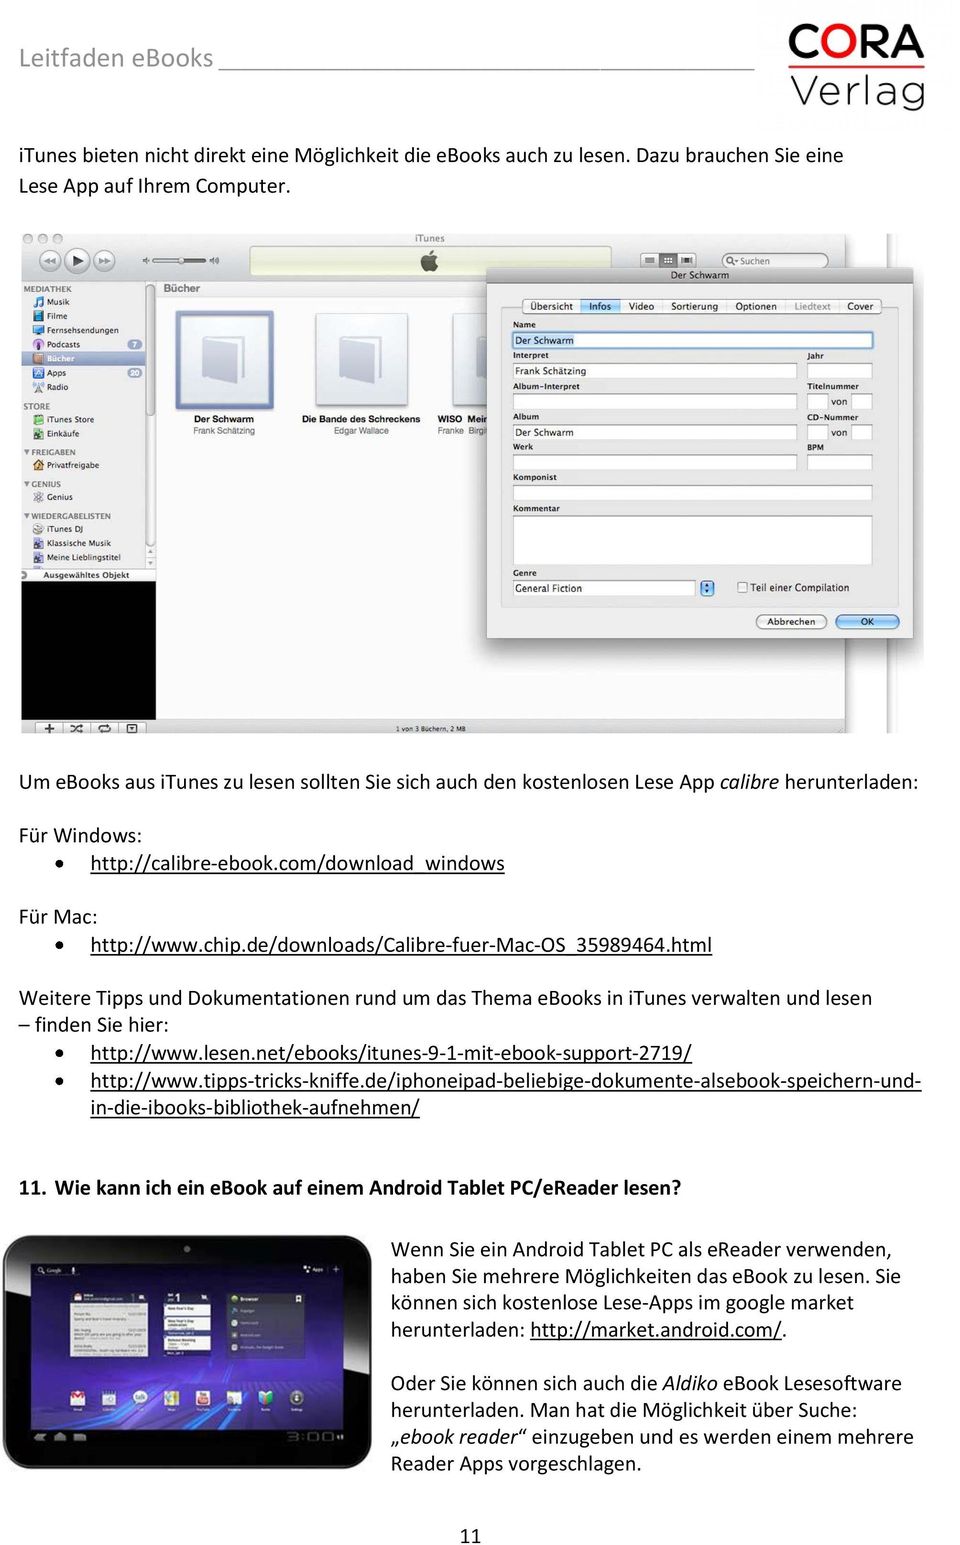 de/downloads/calibre fuer Mac OS_35989464.html Weitere Tipps und Dokumentationen rund um das Thema ebooks in itunes verwalten und lesen finden Sie hier: http://www.lesen.net/ebooks/itunes 9 1 mit ebook support 2719/ http://www.